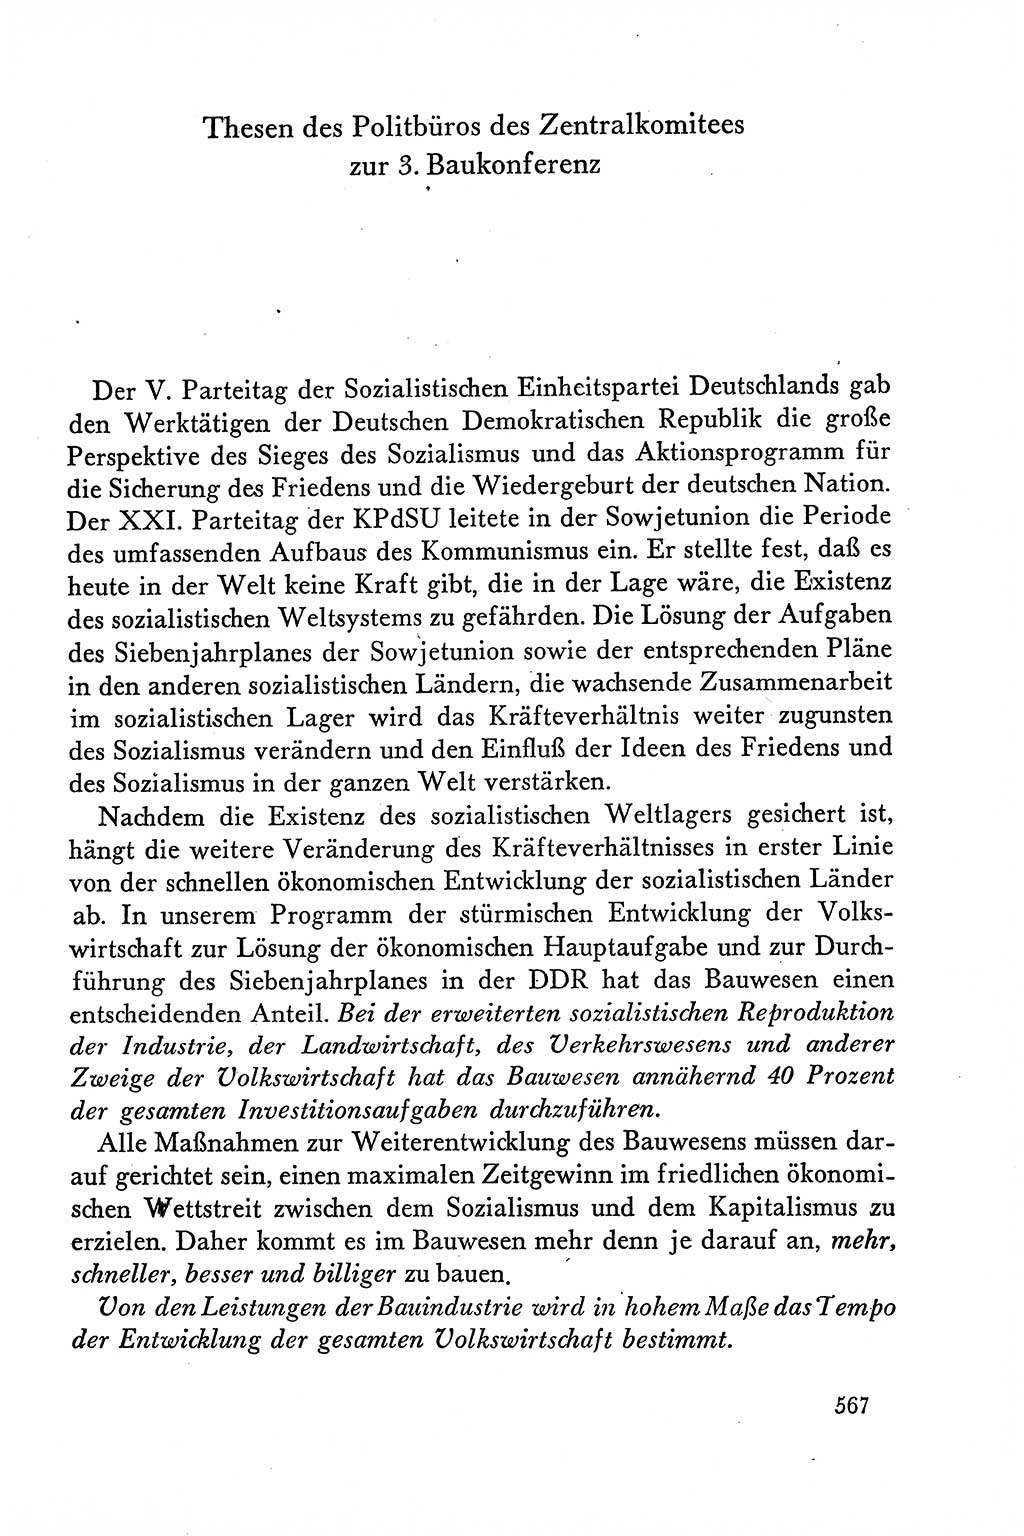 Dokumente der Sozialistischen Einheitspartei Deutschlands (SED) [Deutsche Demokratische Republik (DDR)] 1958-1959, Seite 567 (Dok. SED DDR 1958-1959, S. 567)